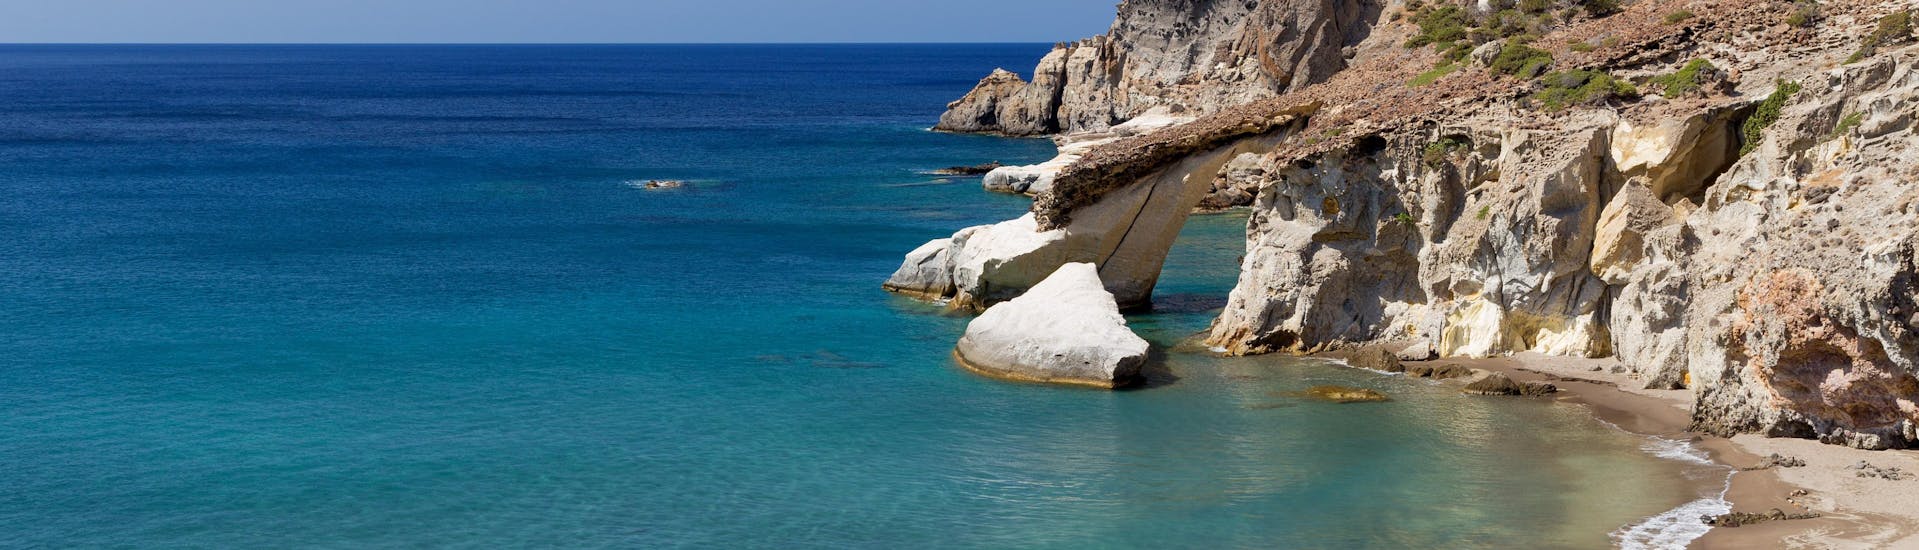 Blick auf den schönen Strand von Gerontas, den Sie bei einer Bootstour um die Insel Milos entdecken können.